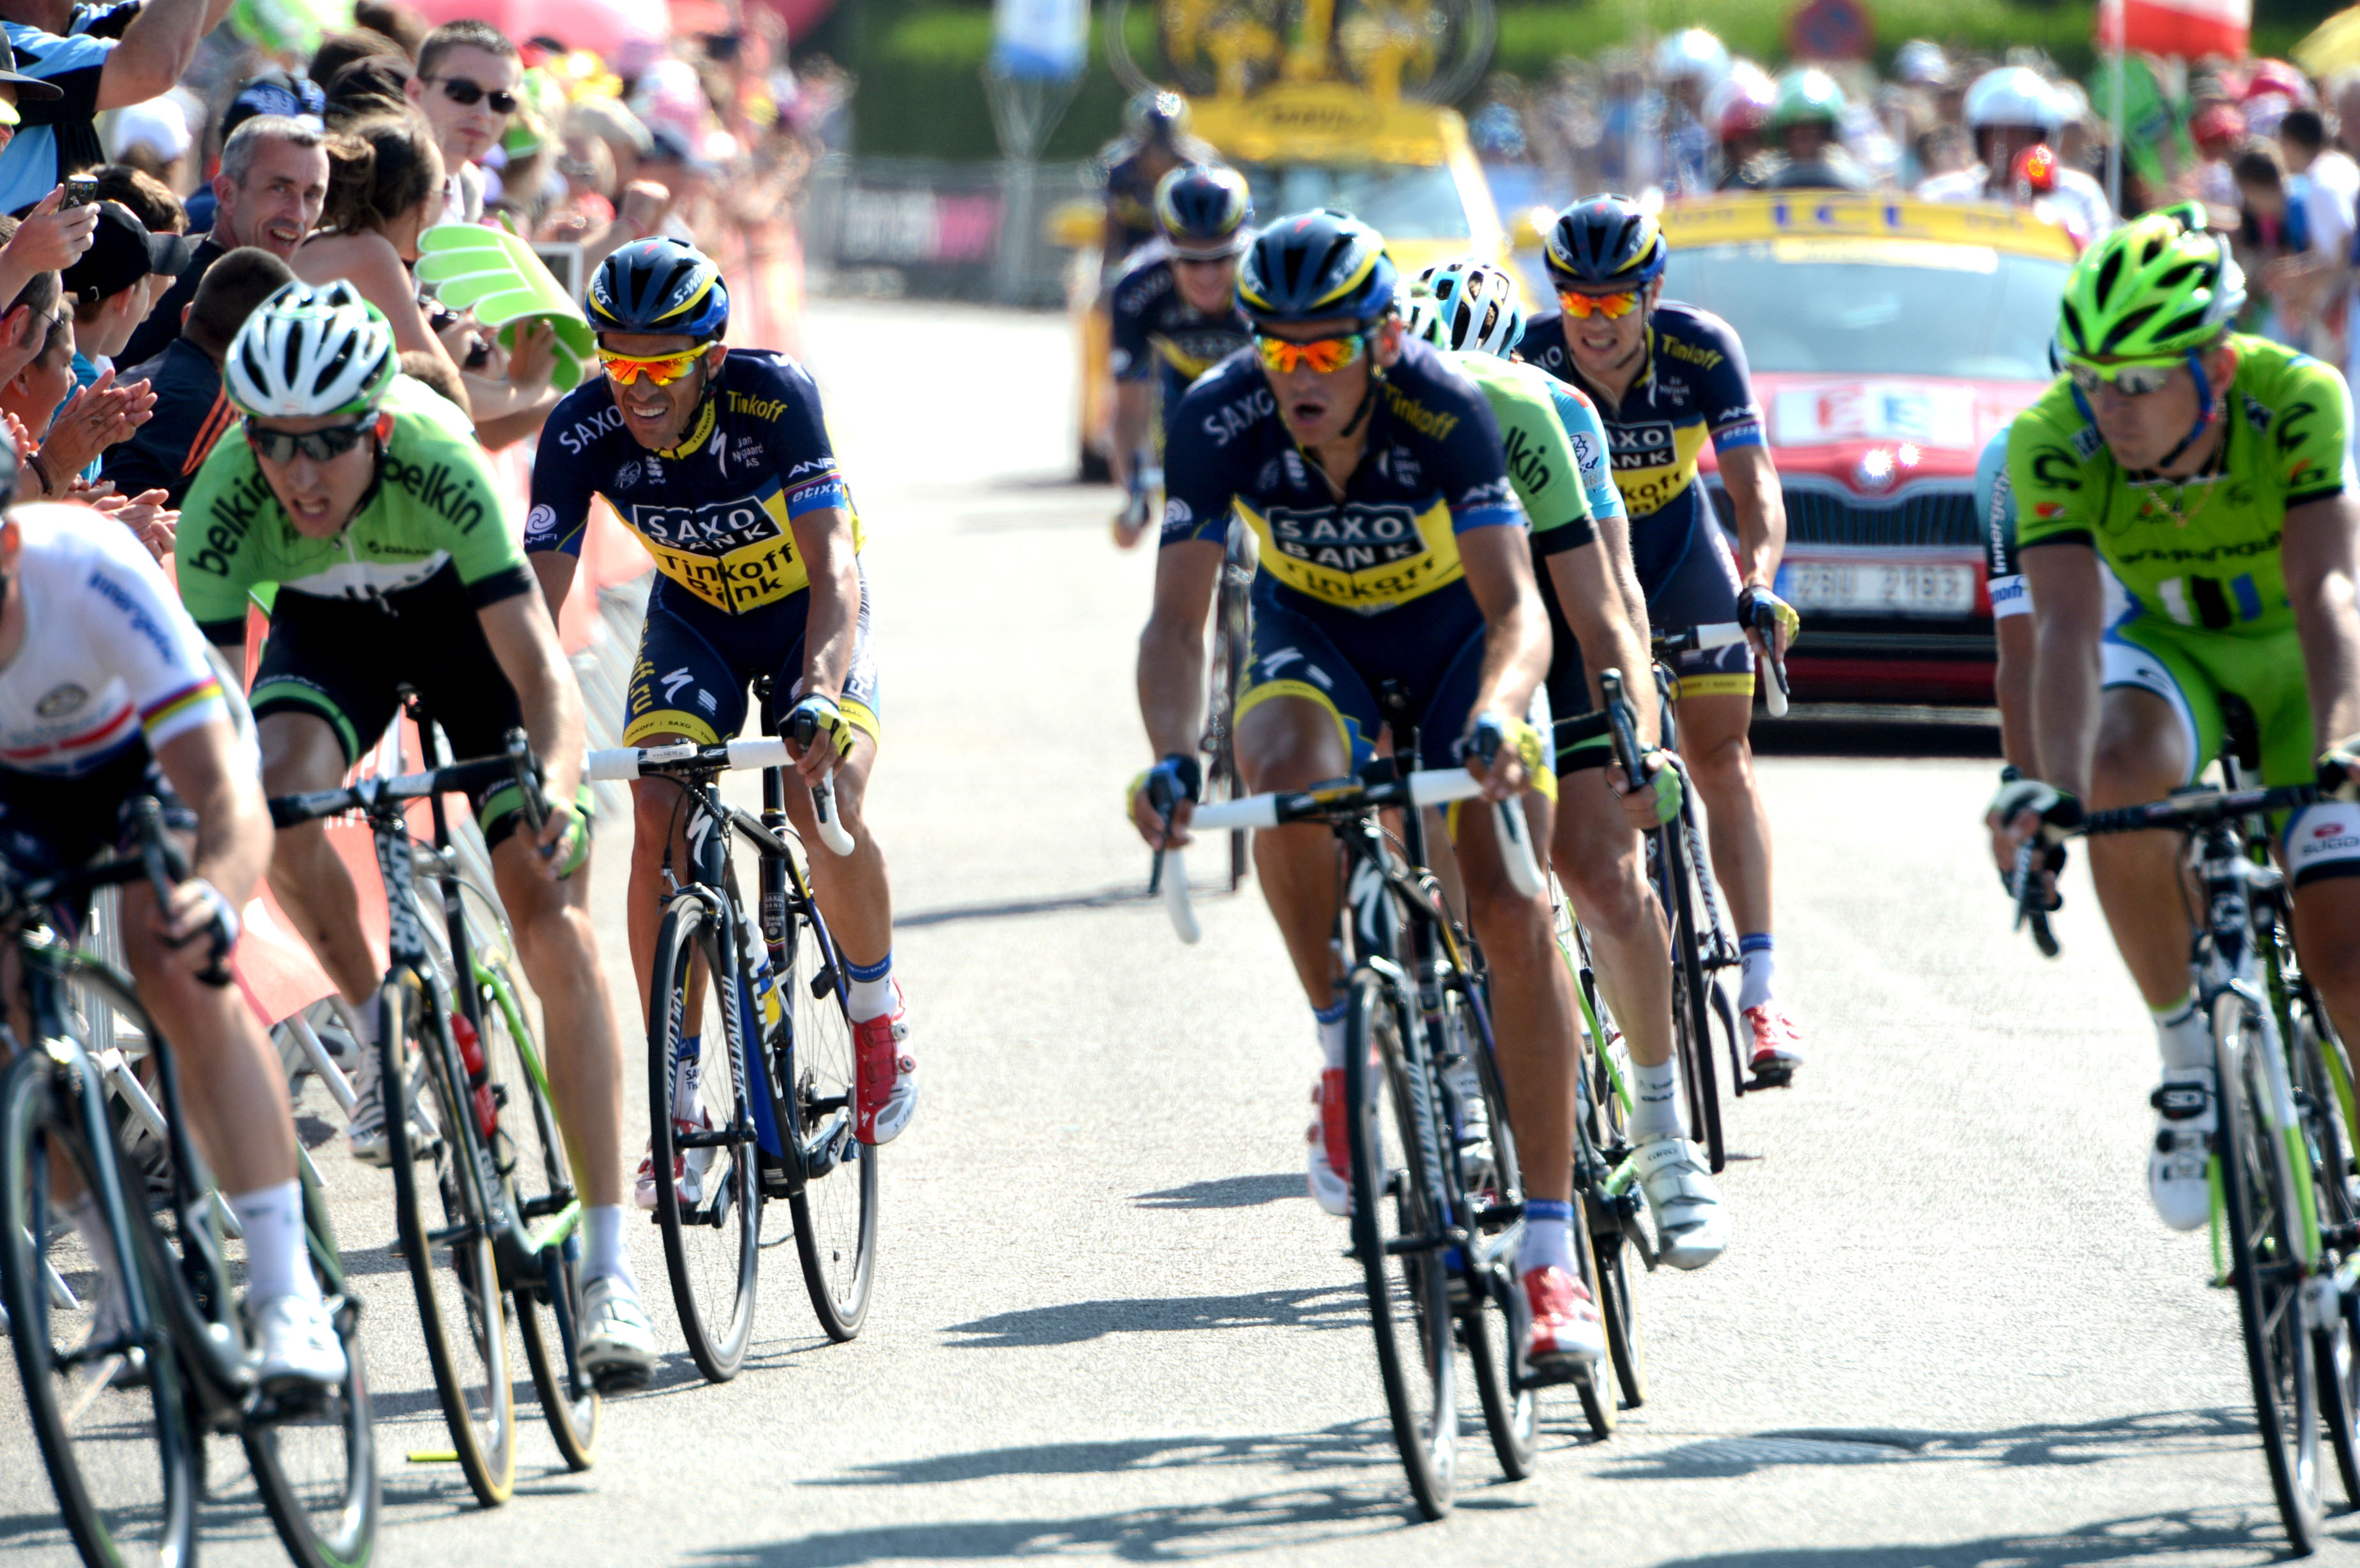 Tour de France, 2013, stage 13, Alberto Contador, Saxo-Tinkoff